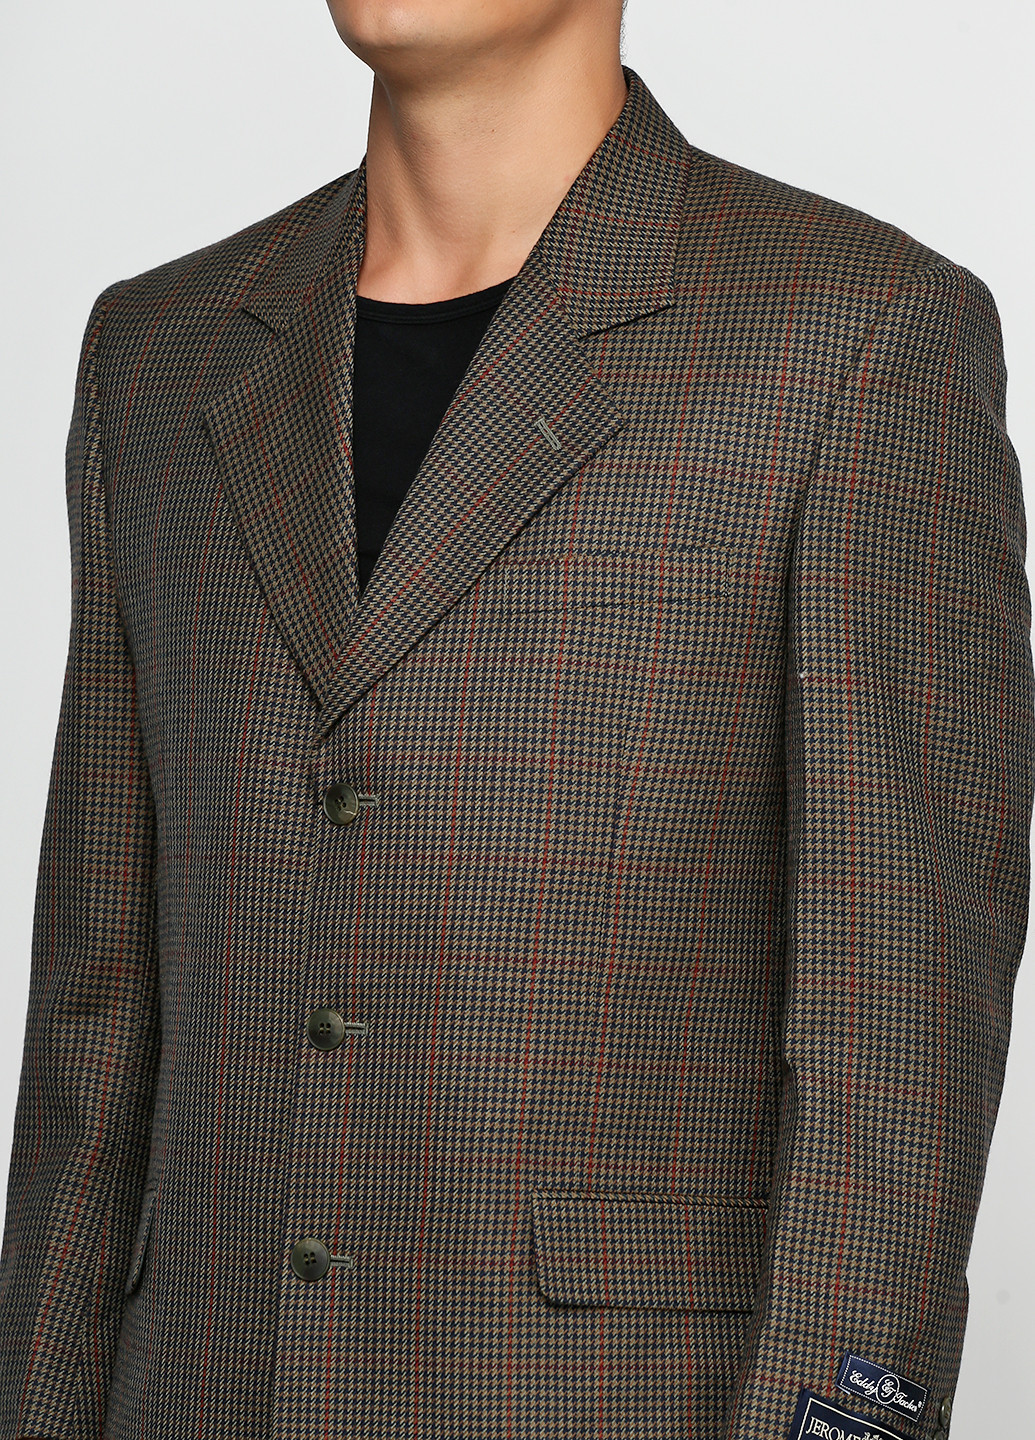 Пиджак Eddy Jacker с длинным рукавом клетка оливковый кэжуал